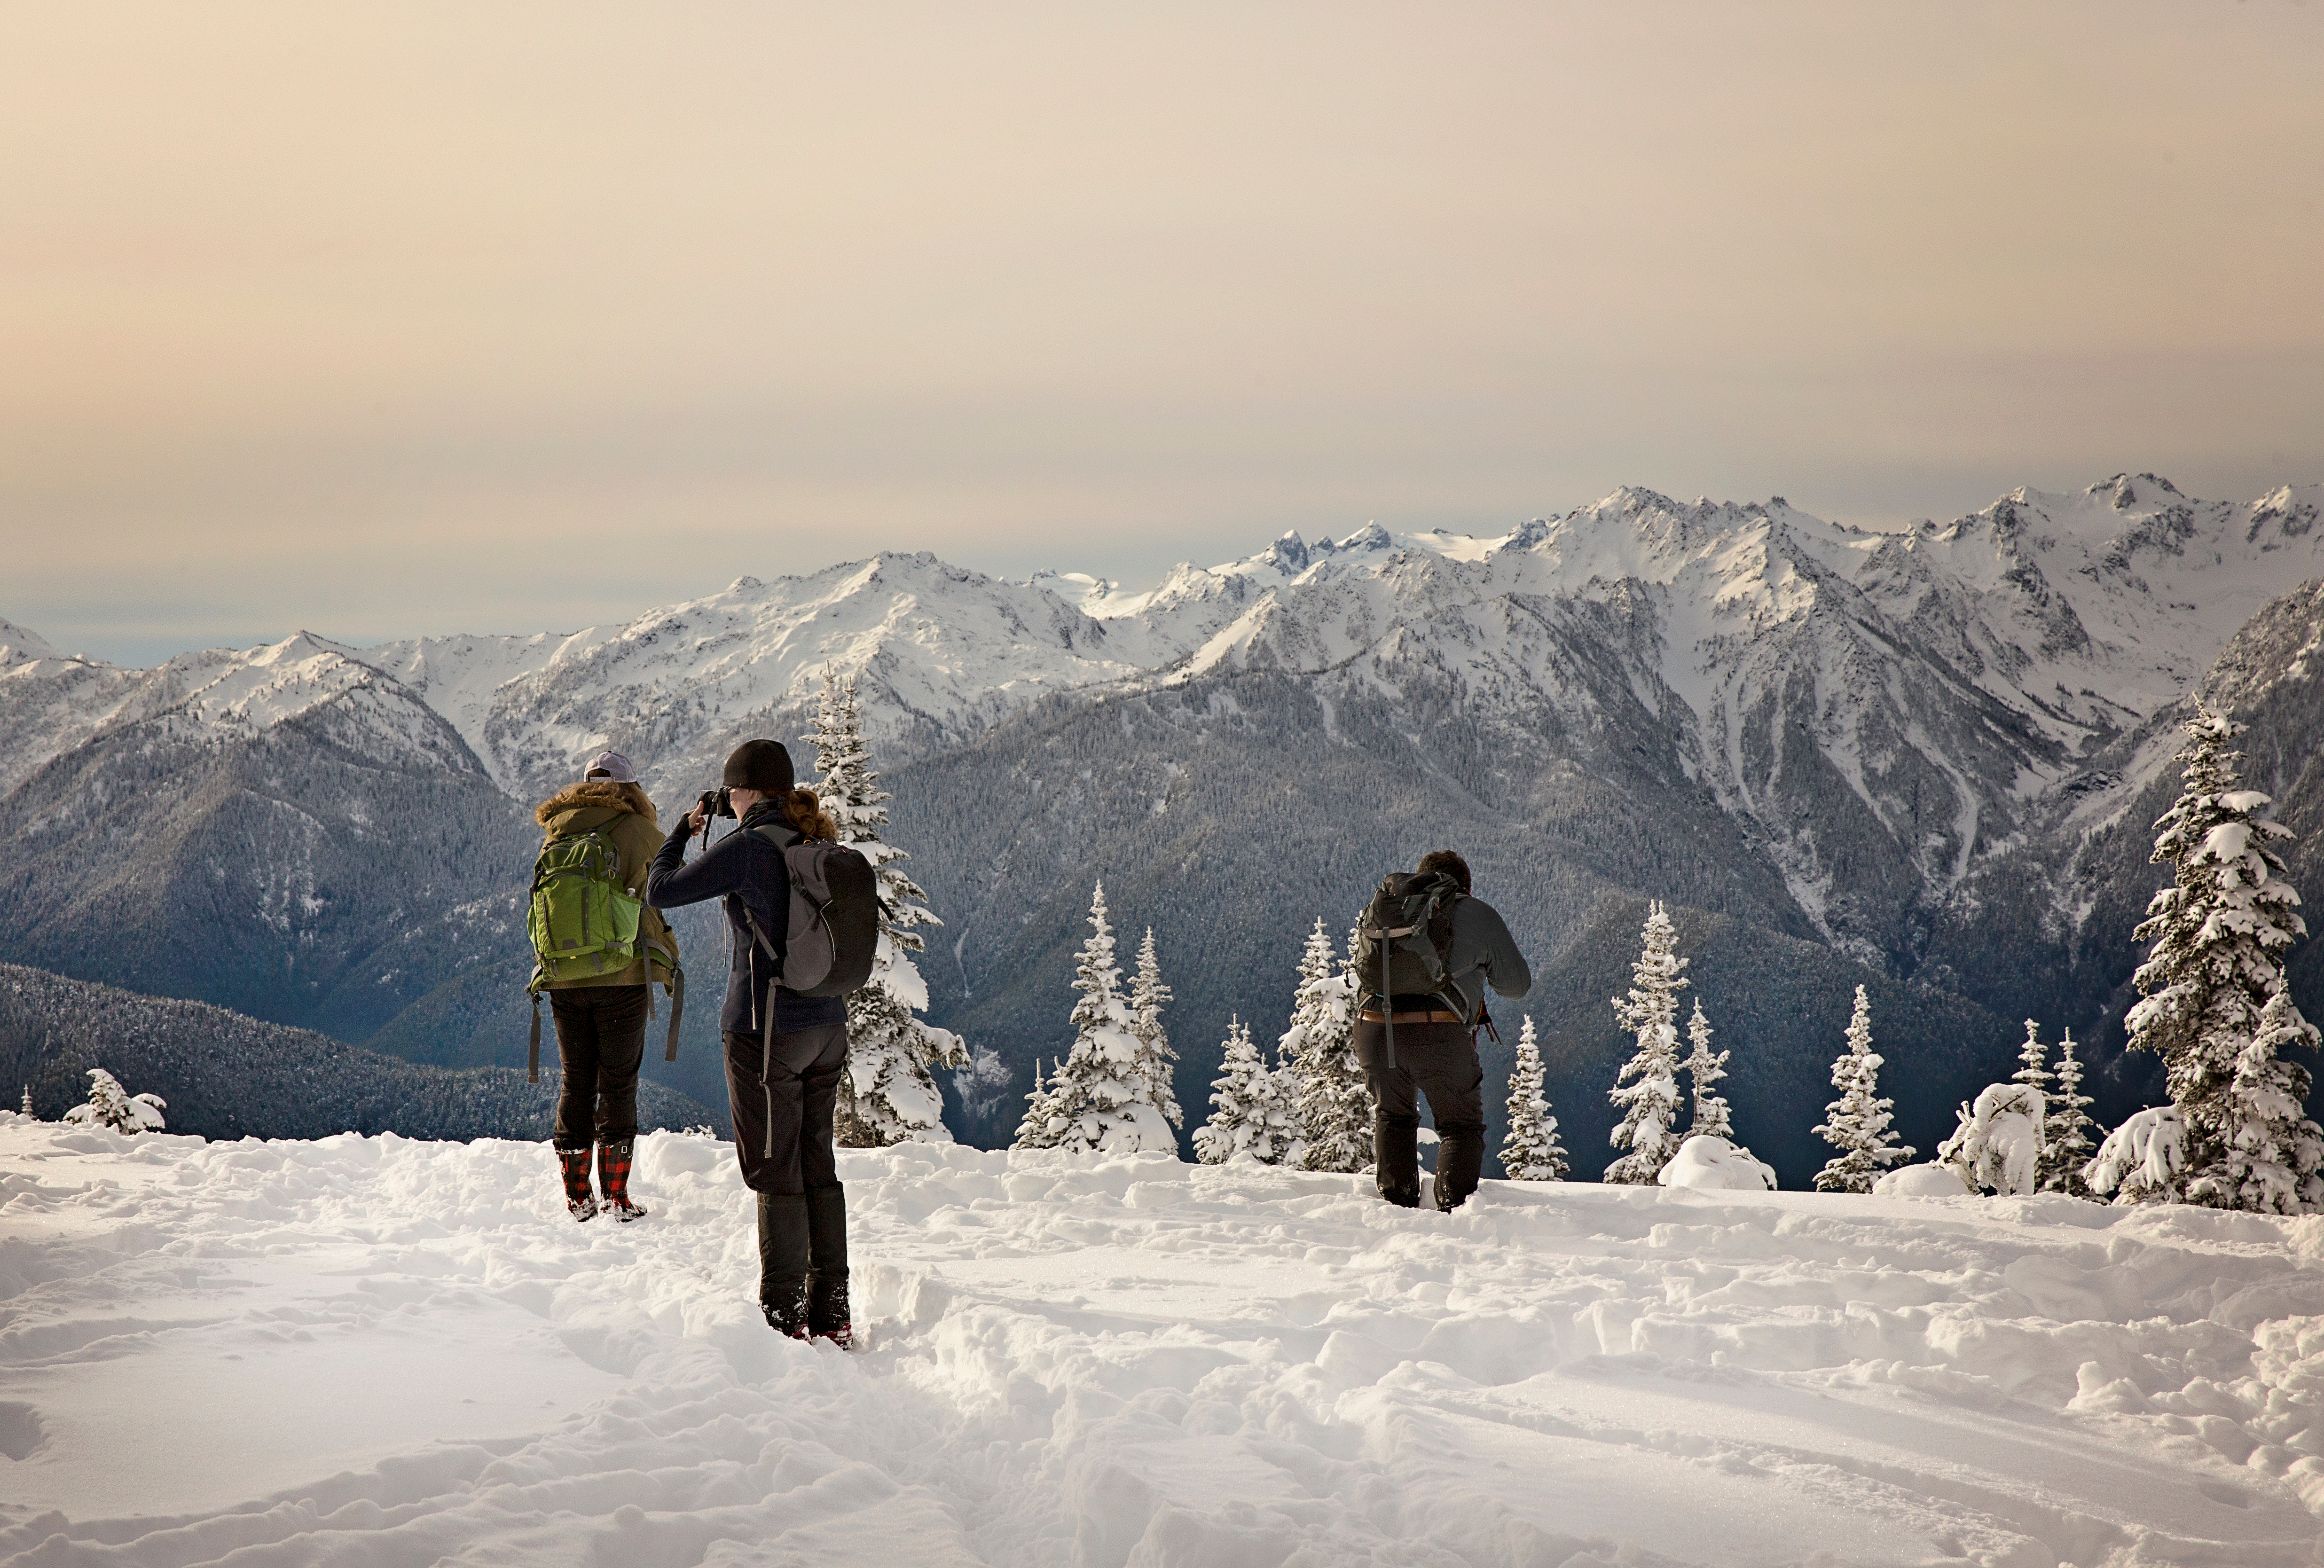 Los 10 mejores parques nacionales en invierno | Esta web - 7